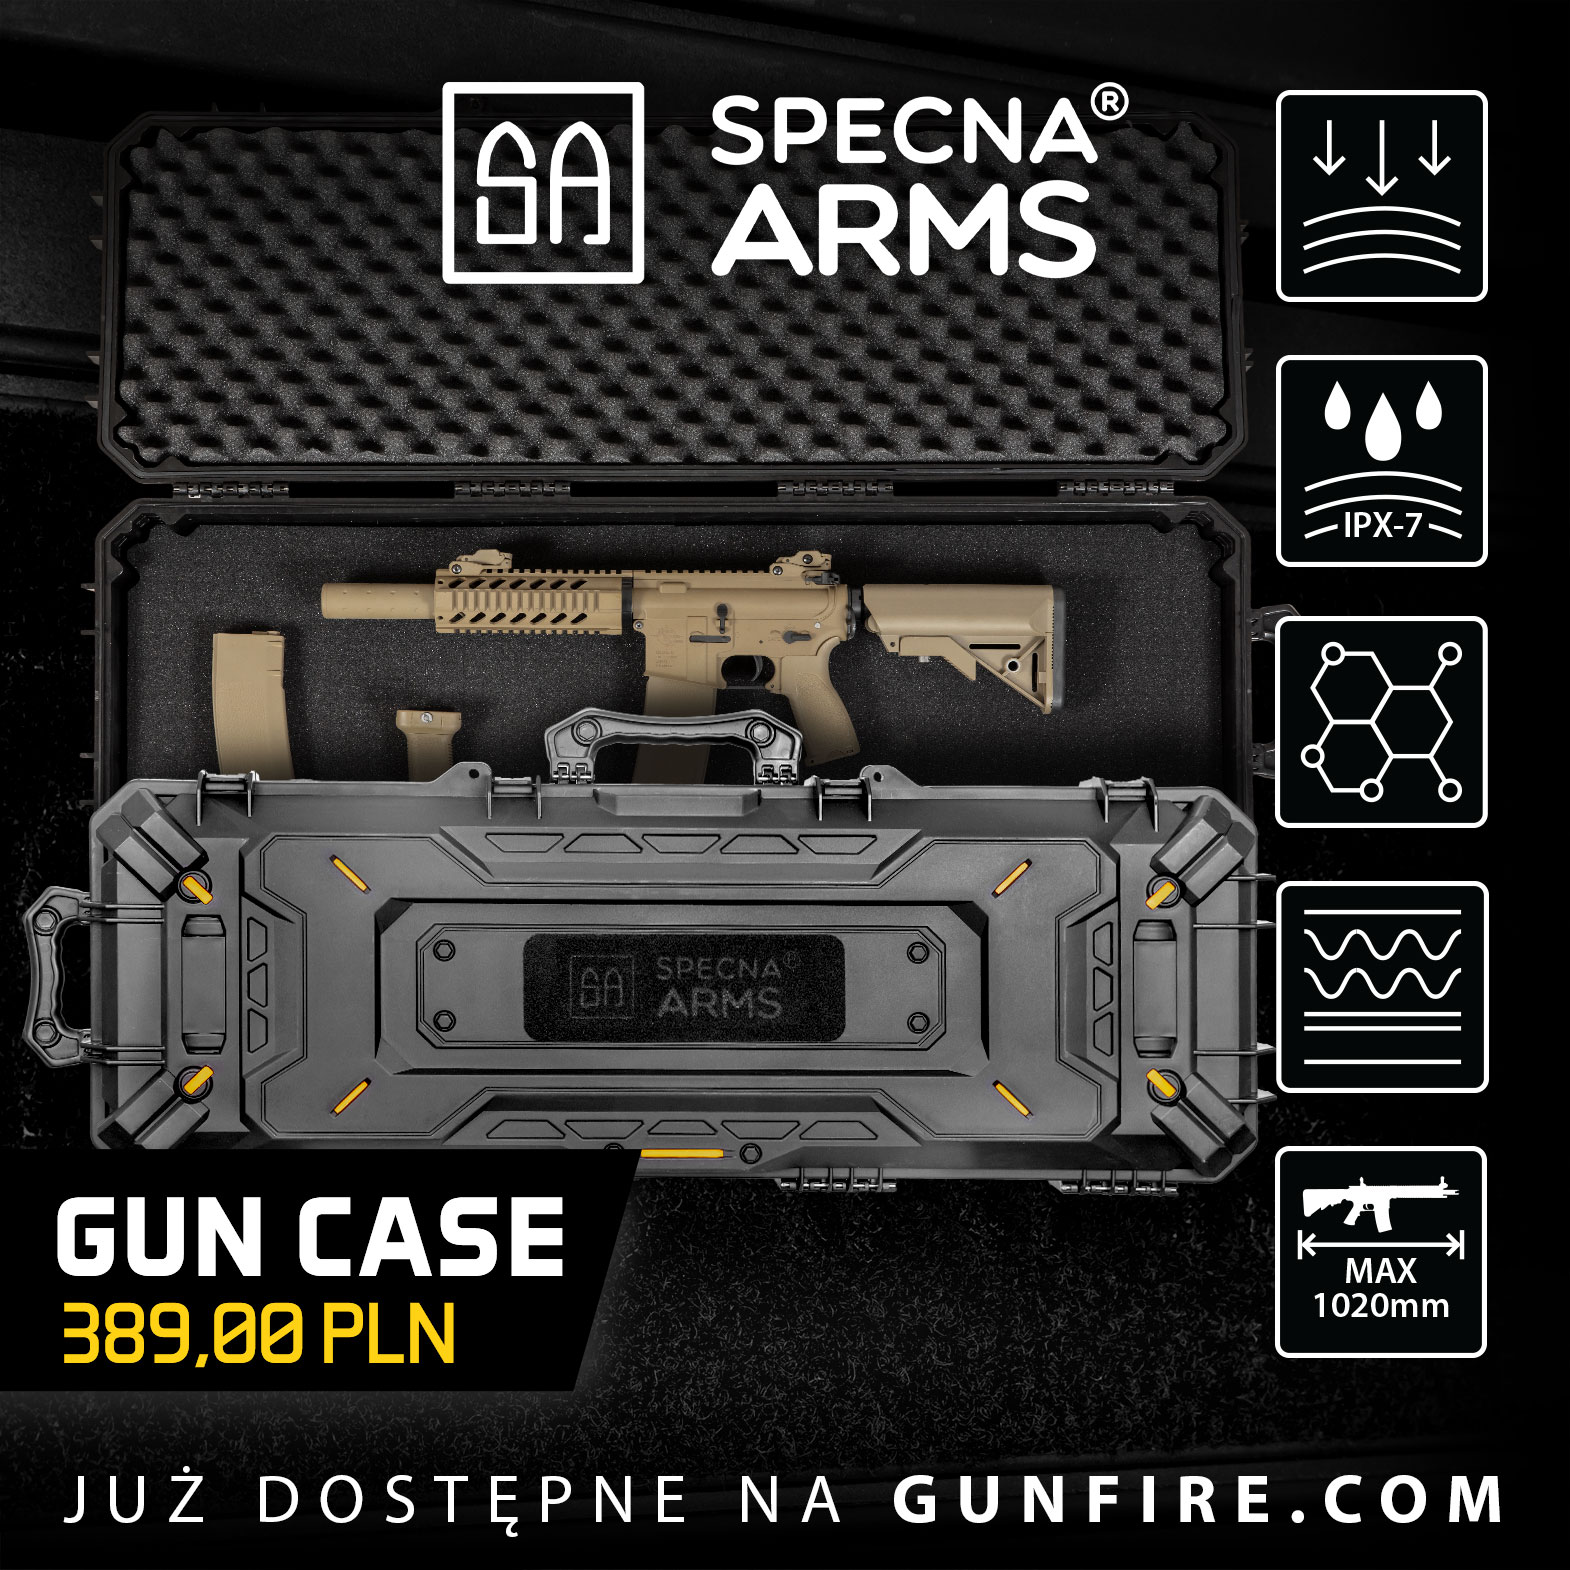 spe-gun-case-pl-db8aacfd4e856b3018f6f1e6533c0b1f.jpg